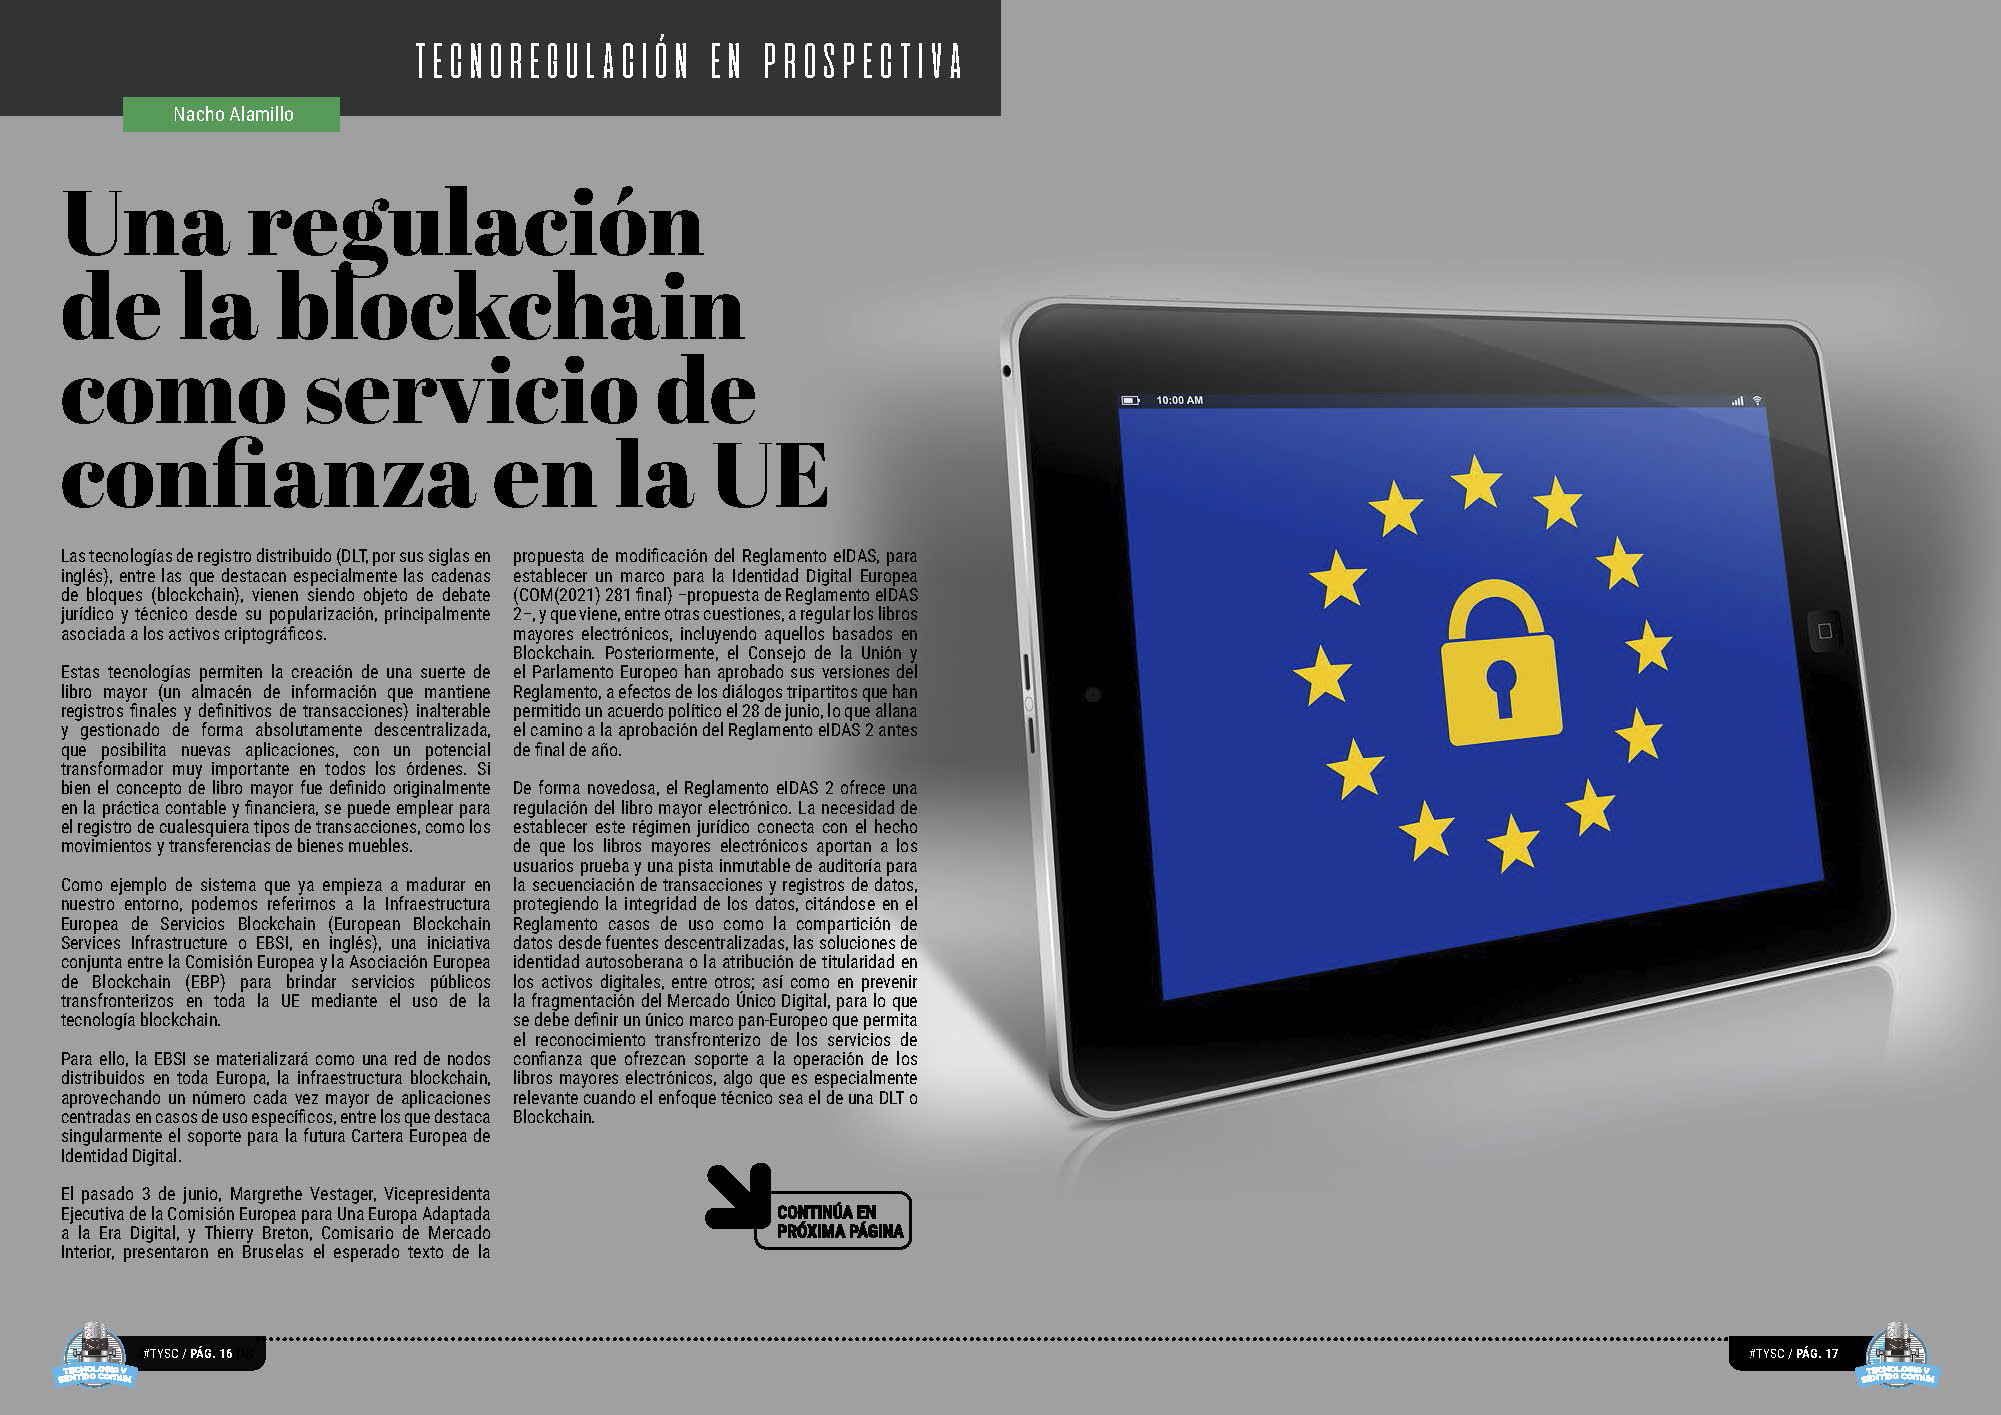 "Una regulación de la blockchain como servicio de confianza en la UE" artículo de "Tecnoregulación en Prospectiva" de Tecnología y Sentido Común 2023 con Nacho Alamillo